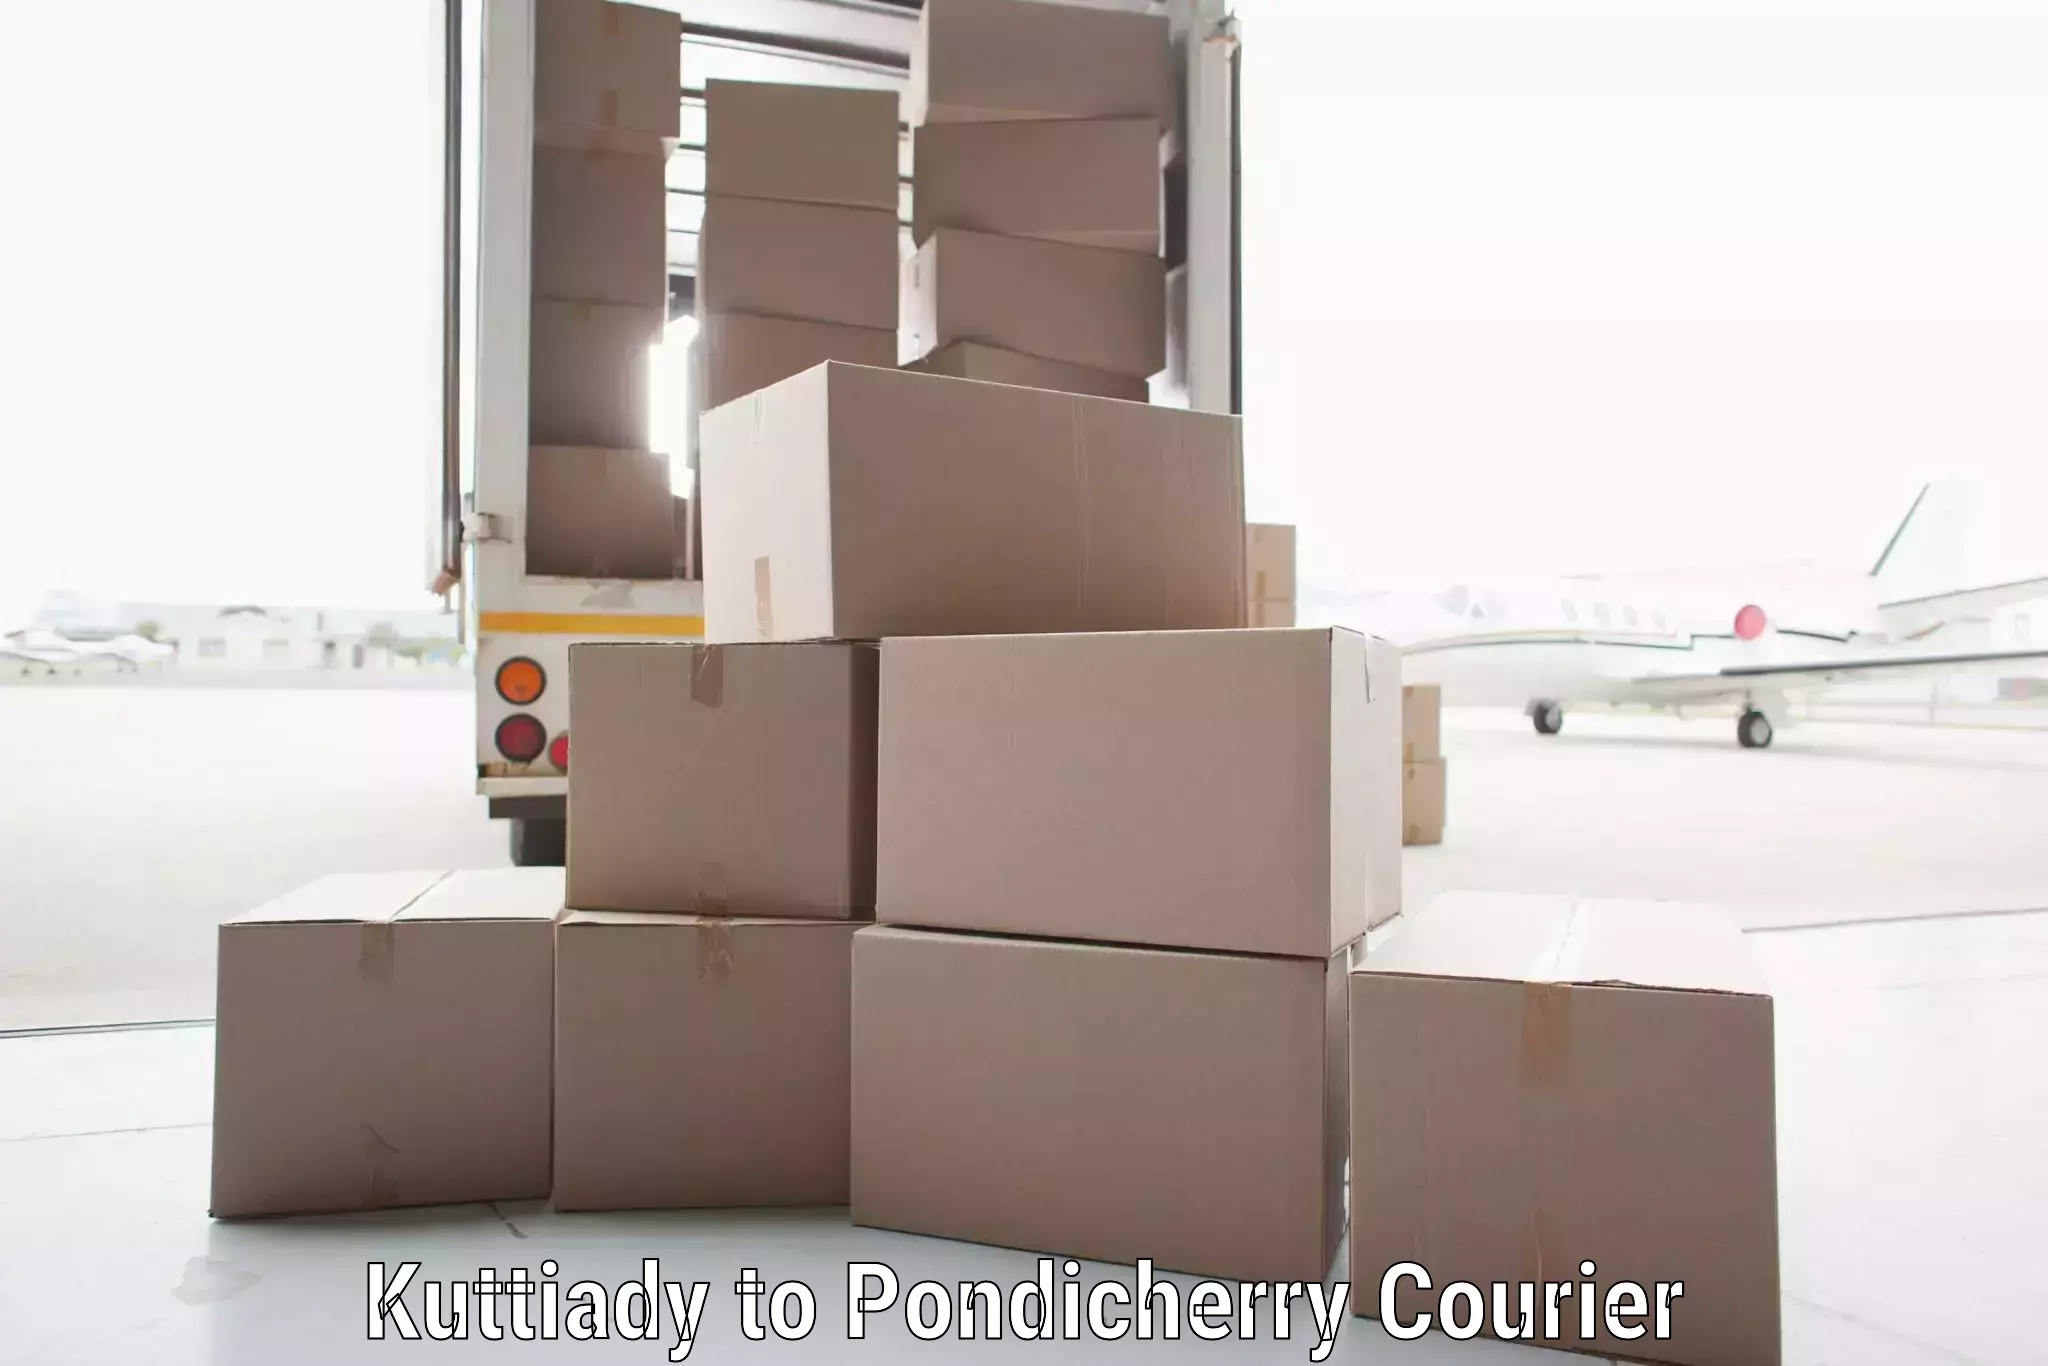 Logistics service provider Kuttiady to Metttupalayam